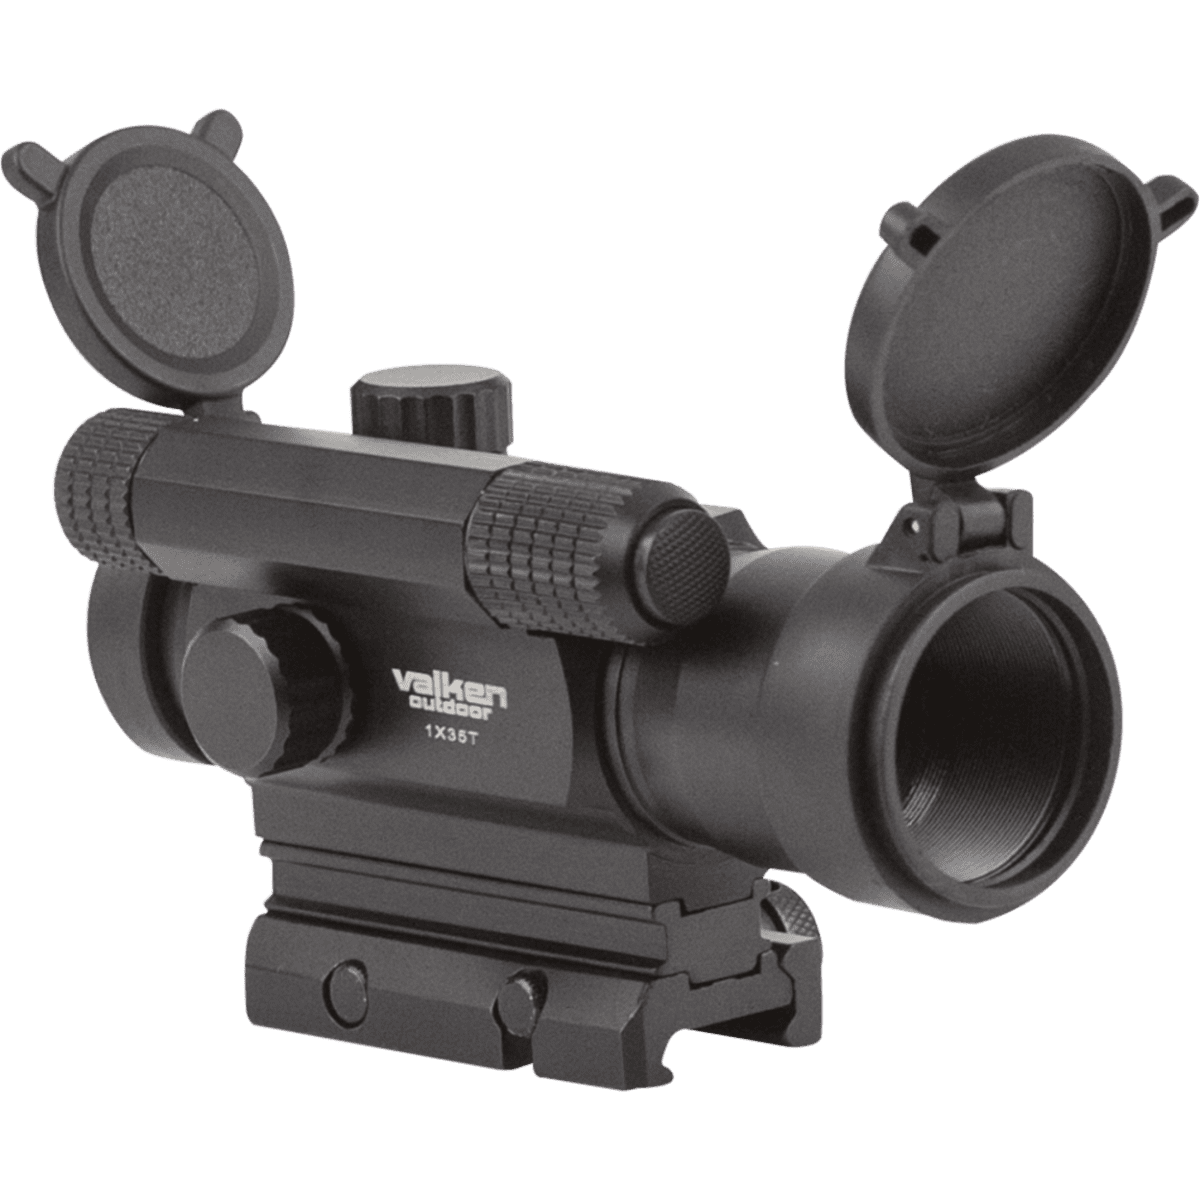 Valken Tactical Red Dot Sight 1x35T